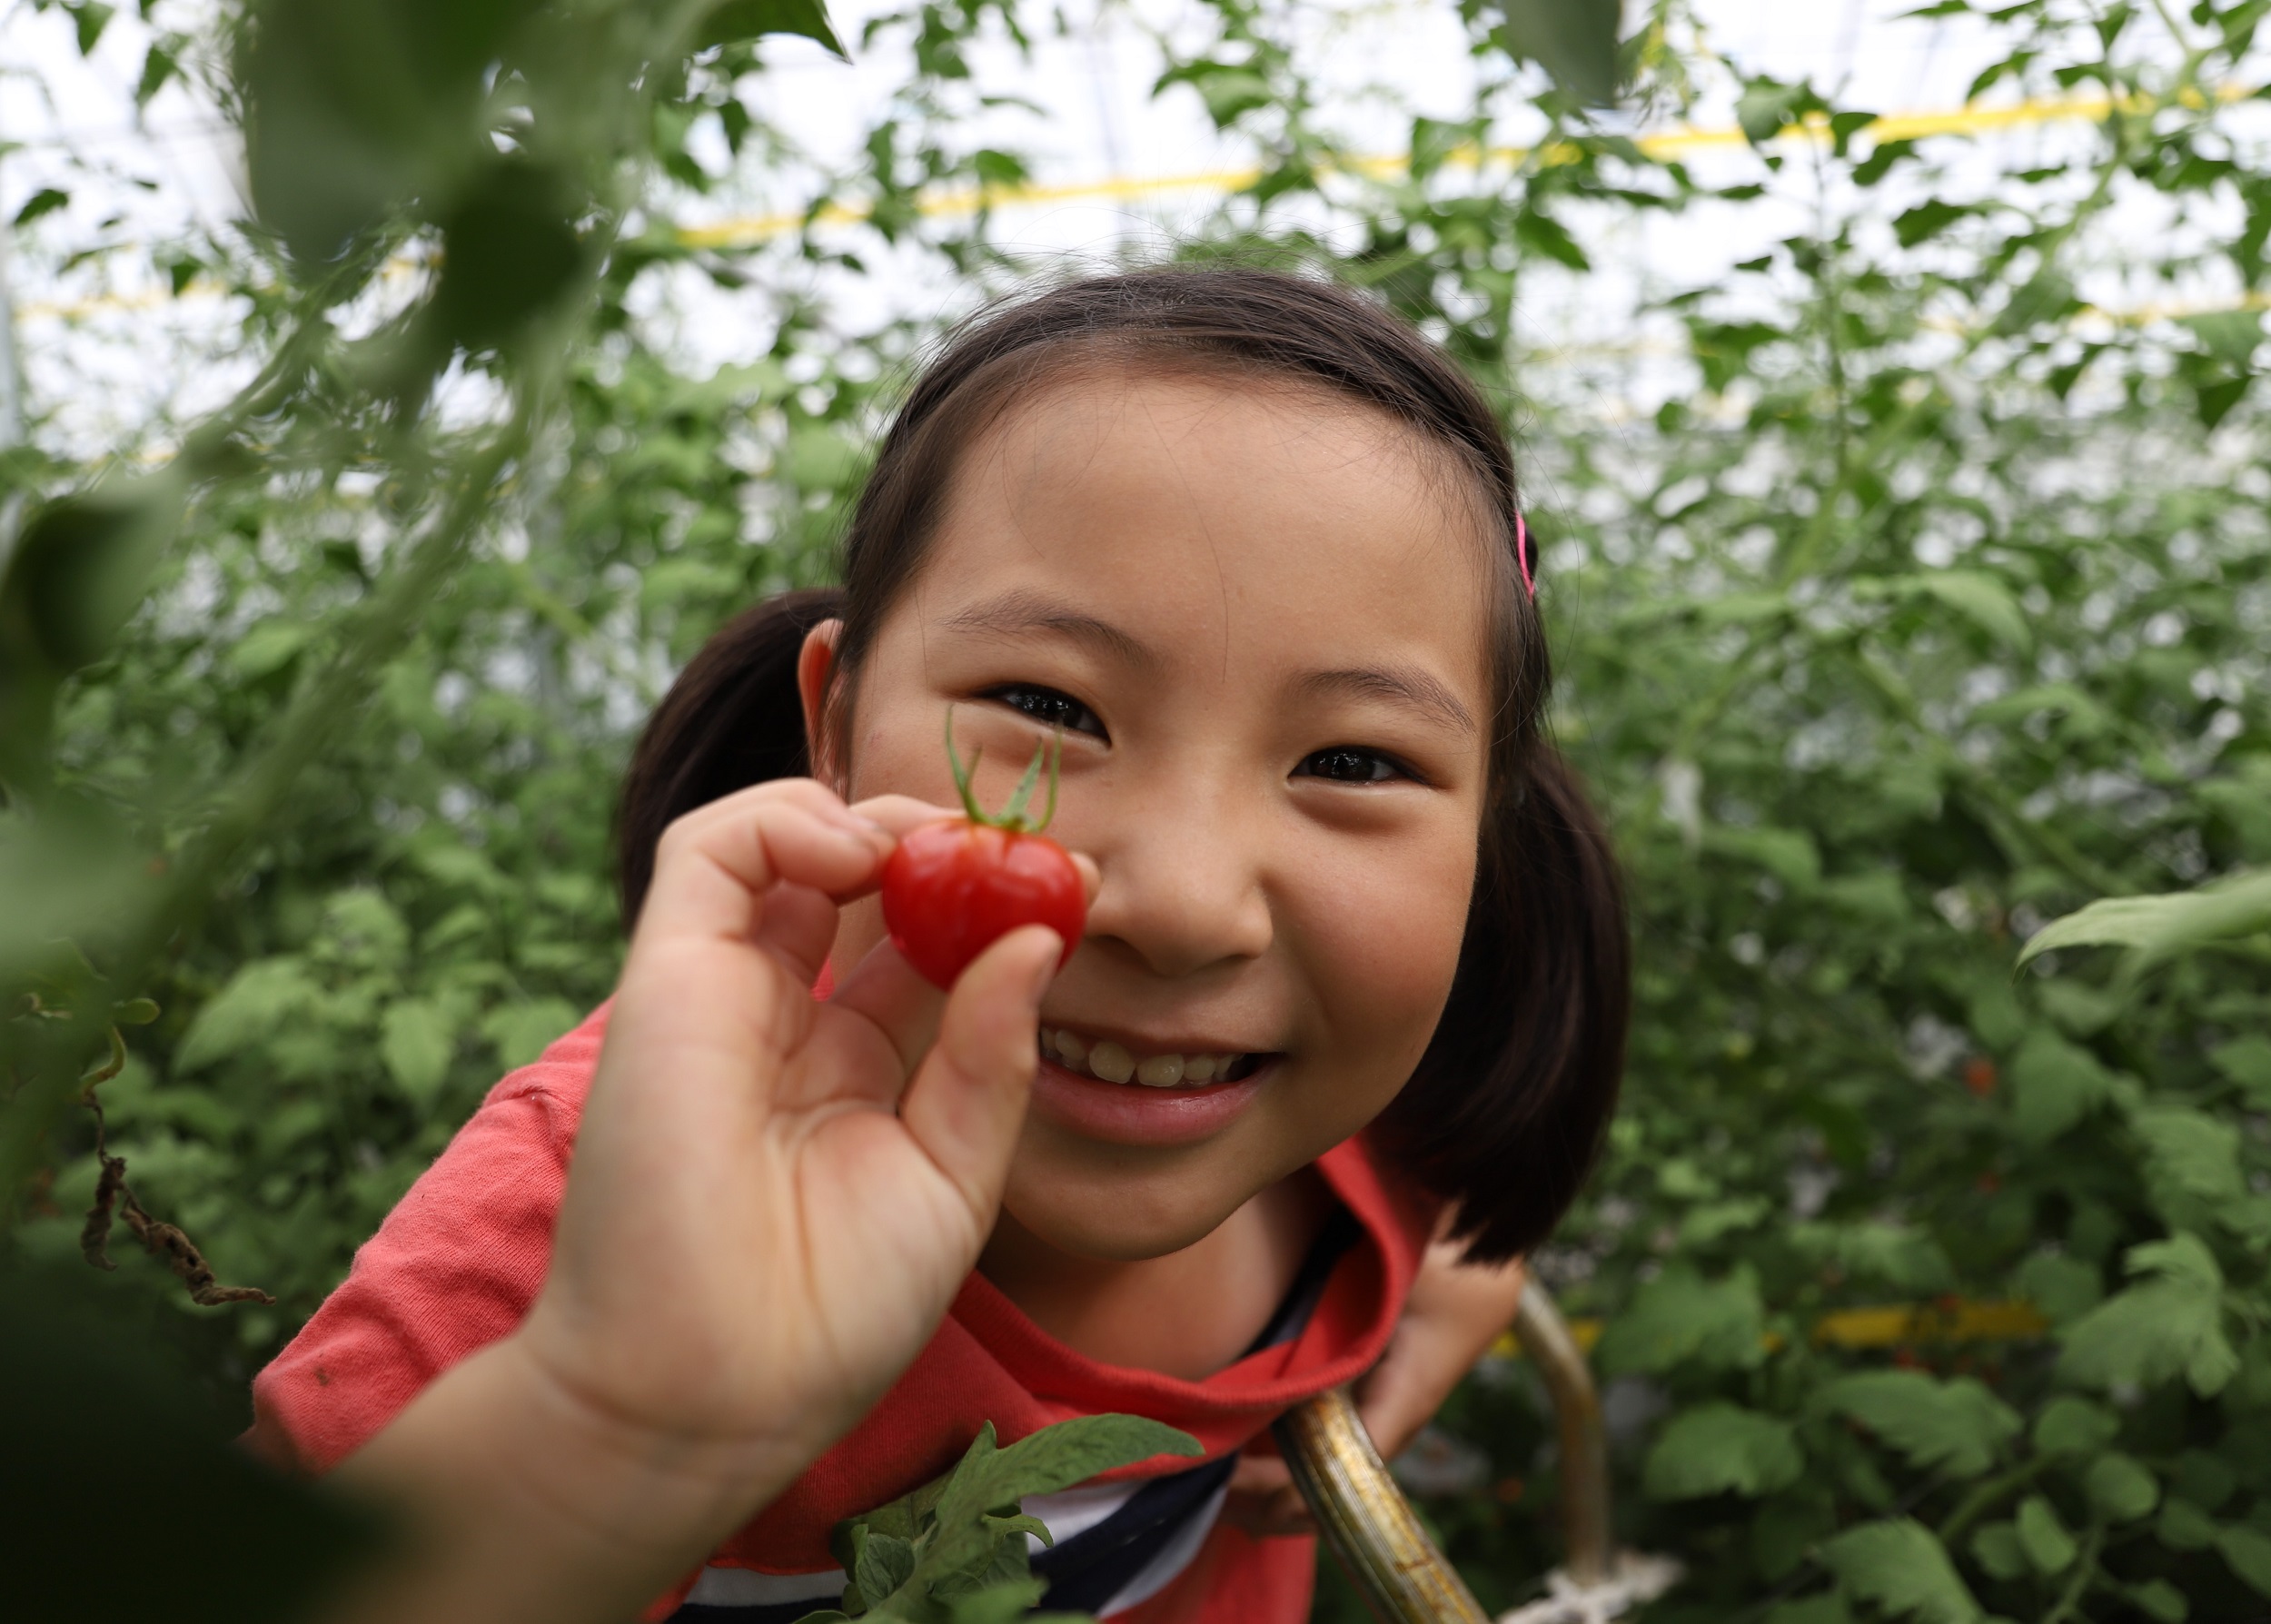 お子さんがミニトマトを持って微笑む写真